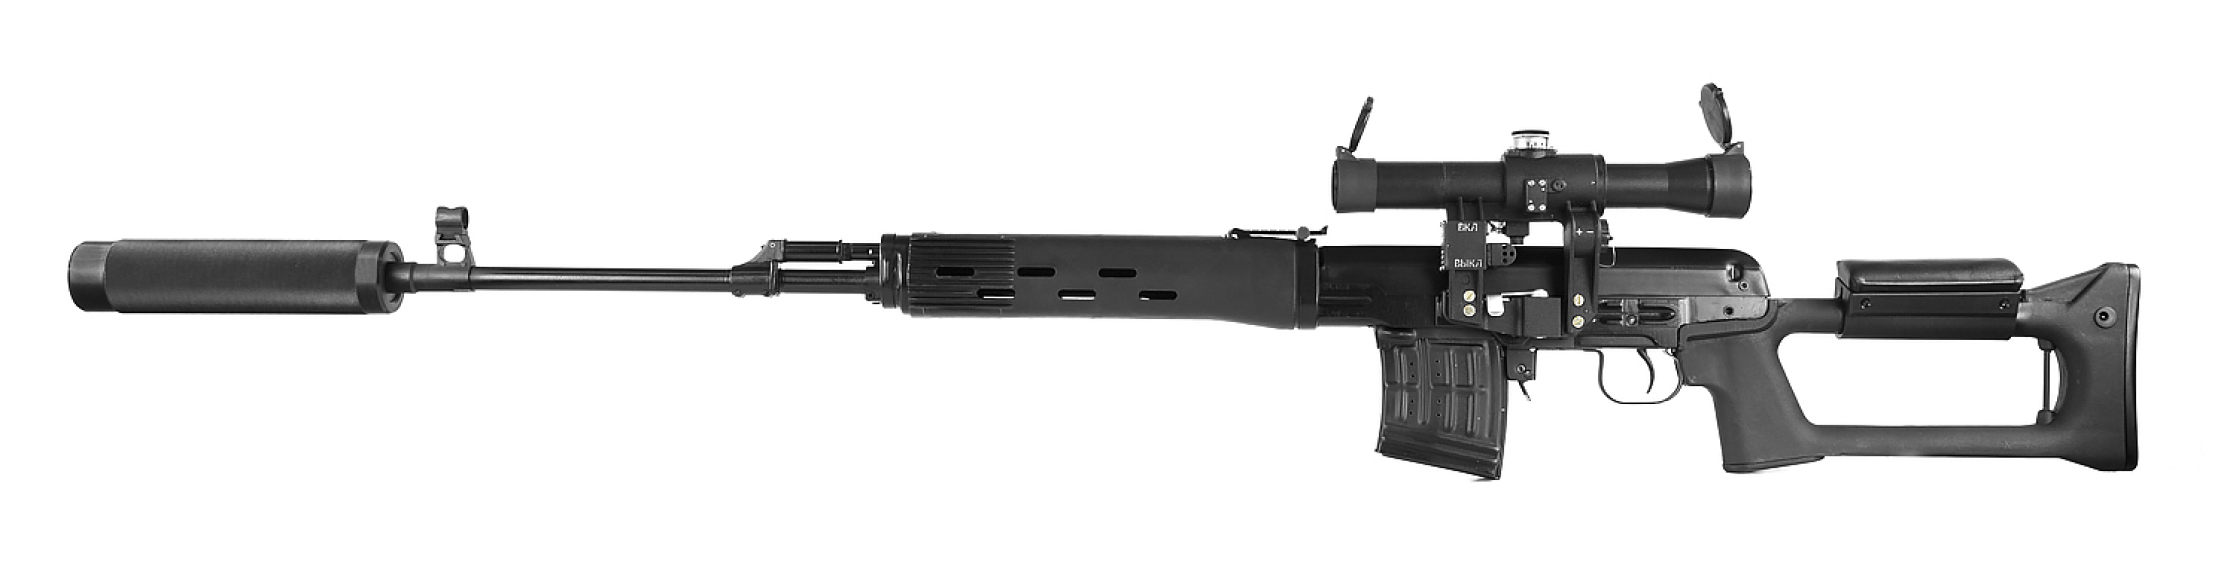 Снайперская винтовка СВД «ТИТАН» серии «STEEL» - фото 1